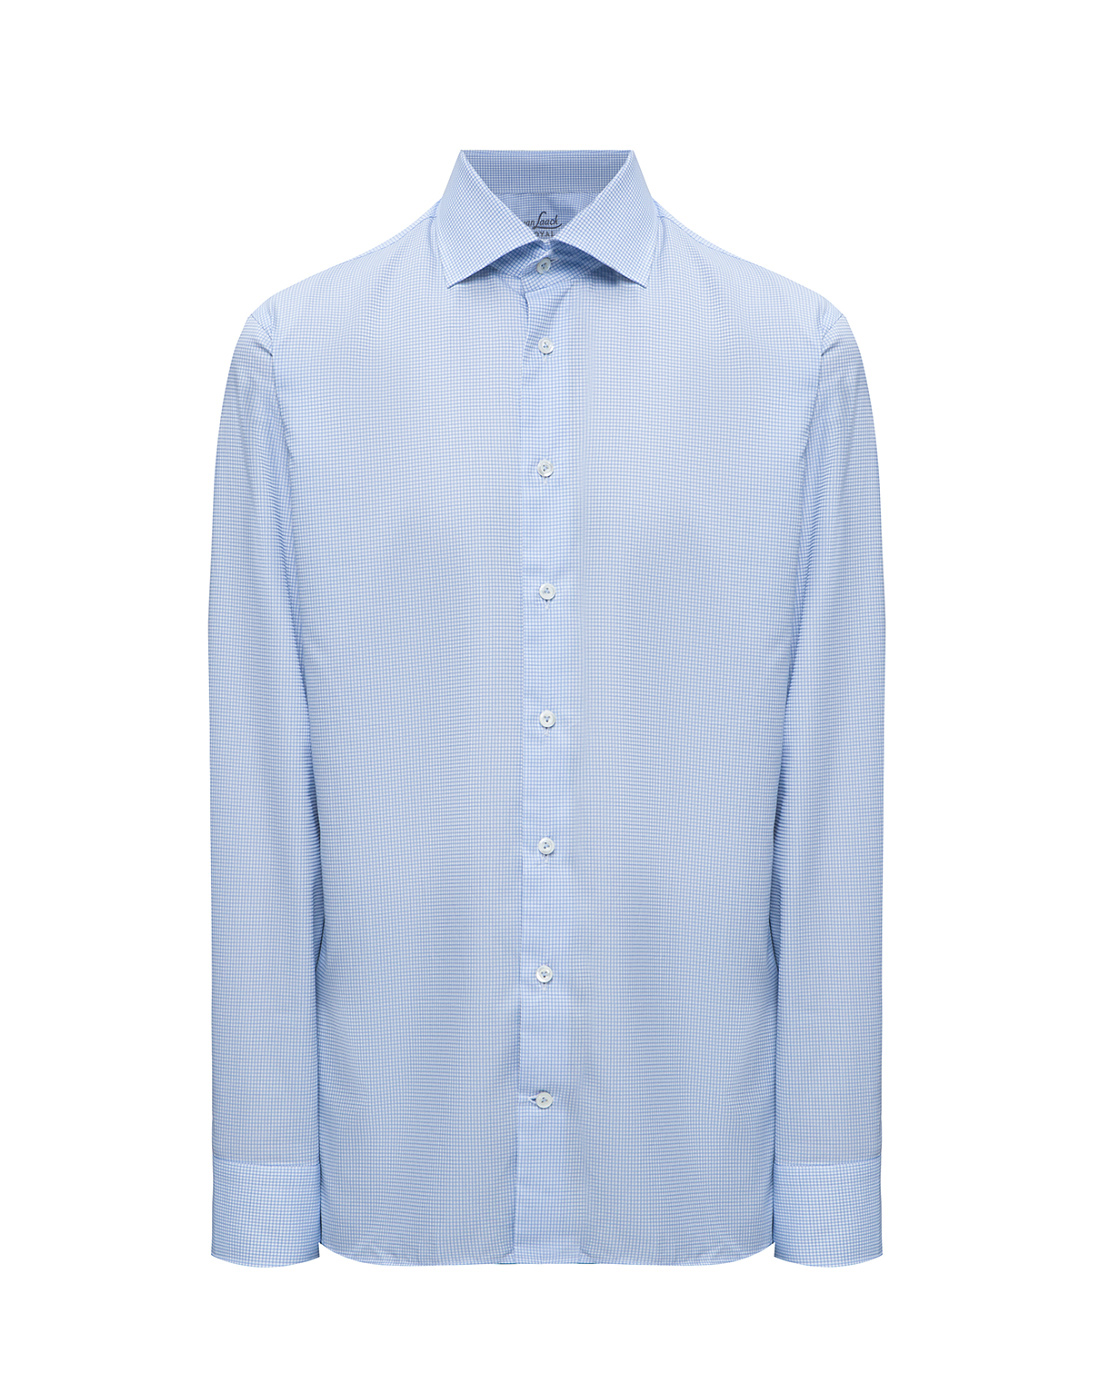 Мужская голубая рубашка в клетку Van Laack S161496/720-1